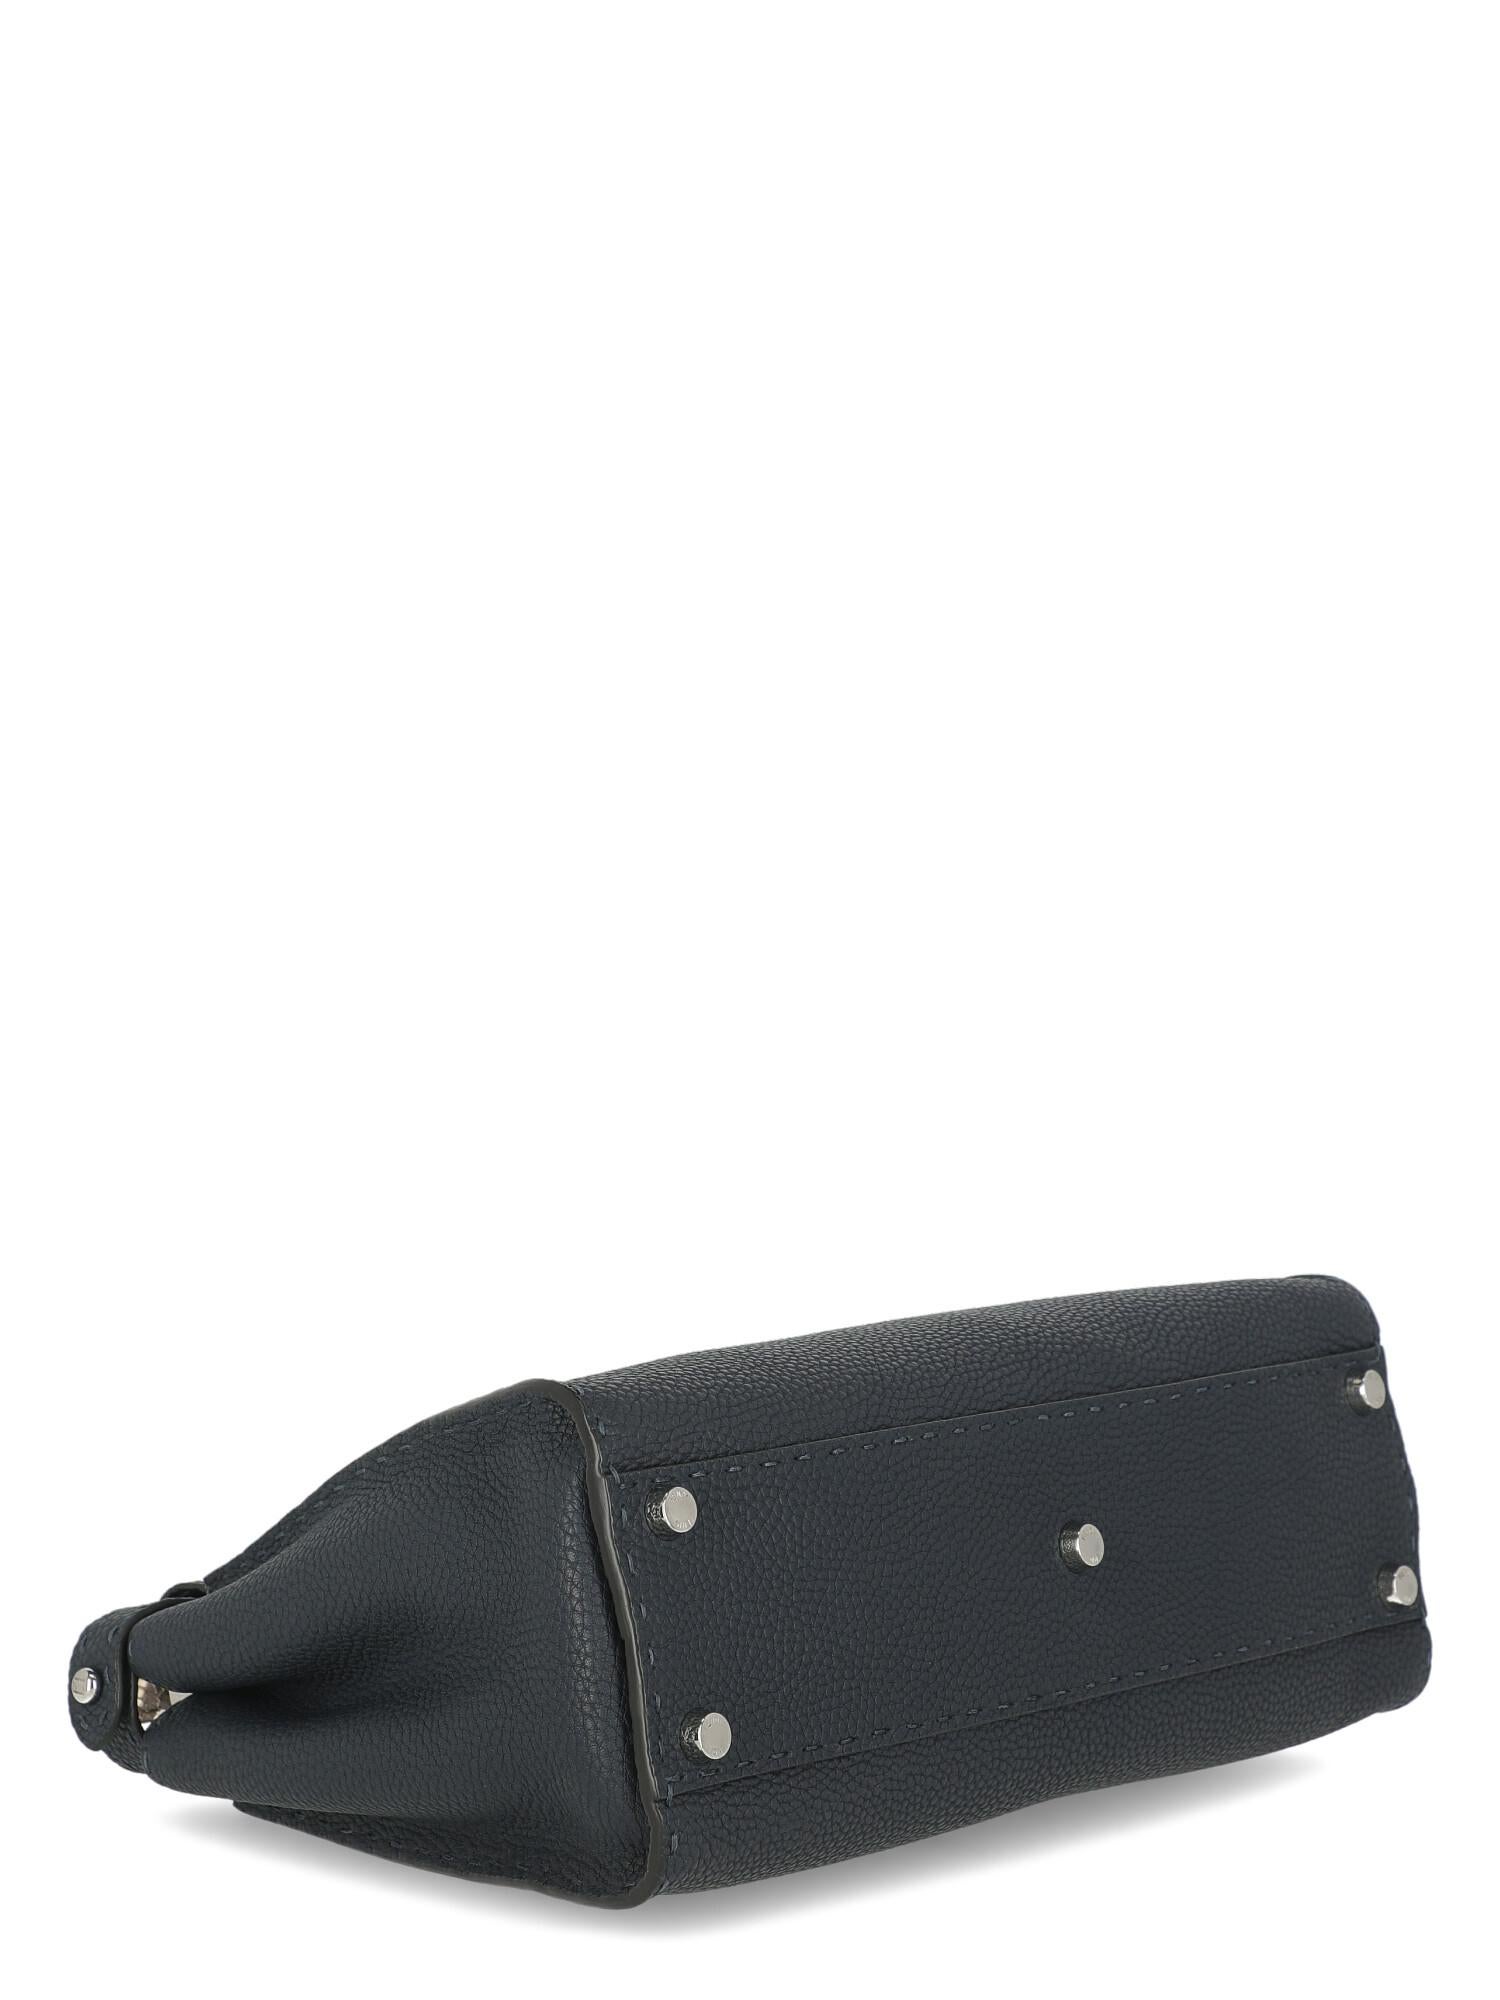 Fendi Women's Handbag Peekaboo Beige/Navy Leather For Sale 1